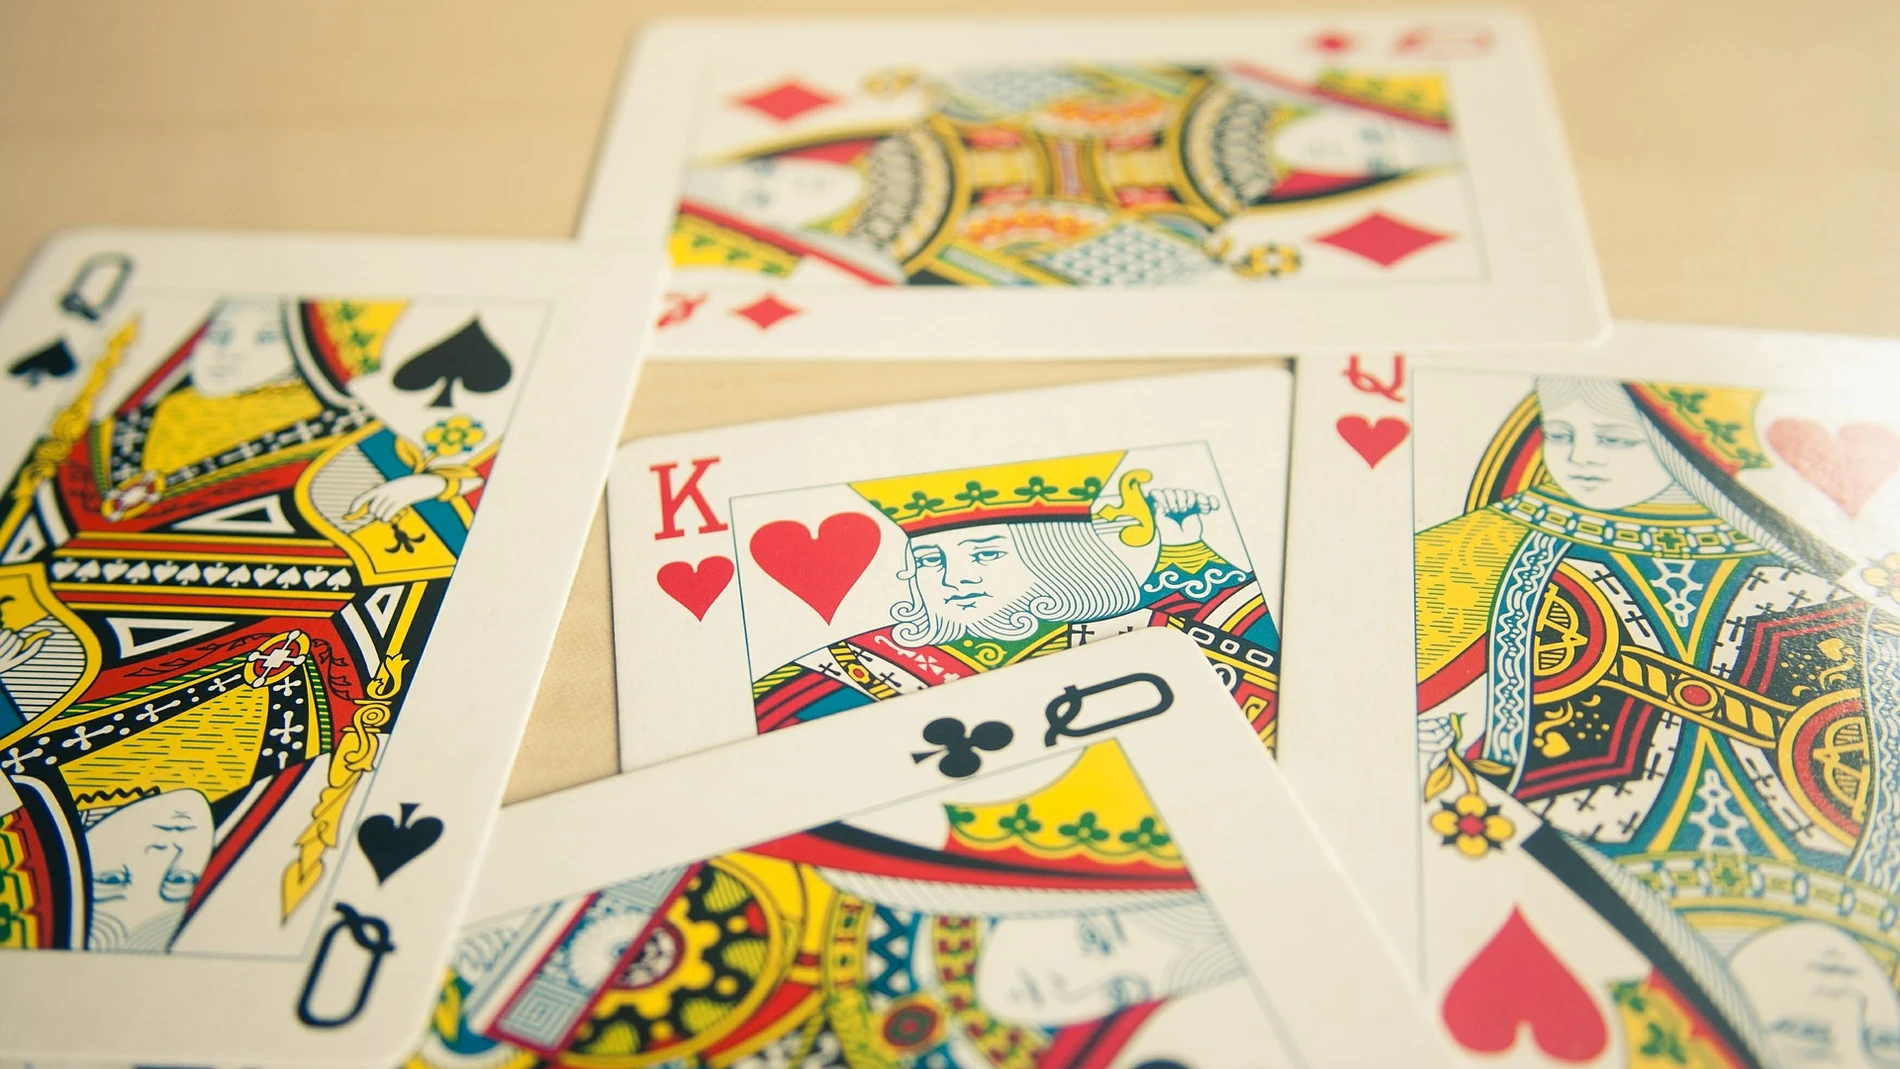 Los 5 juegos de cartas más populares entre los jóvenes - Banca y Negocios